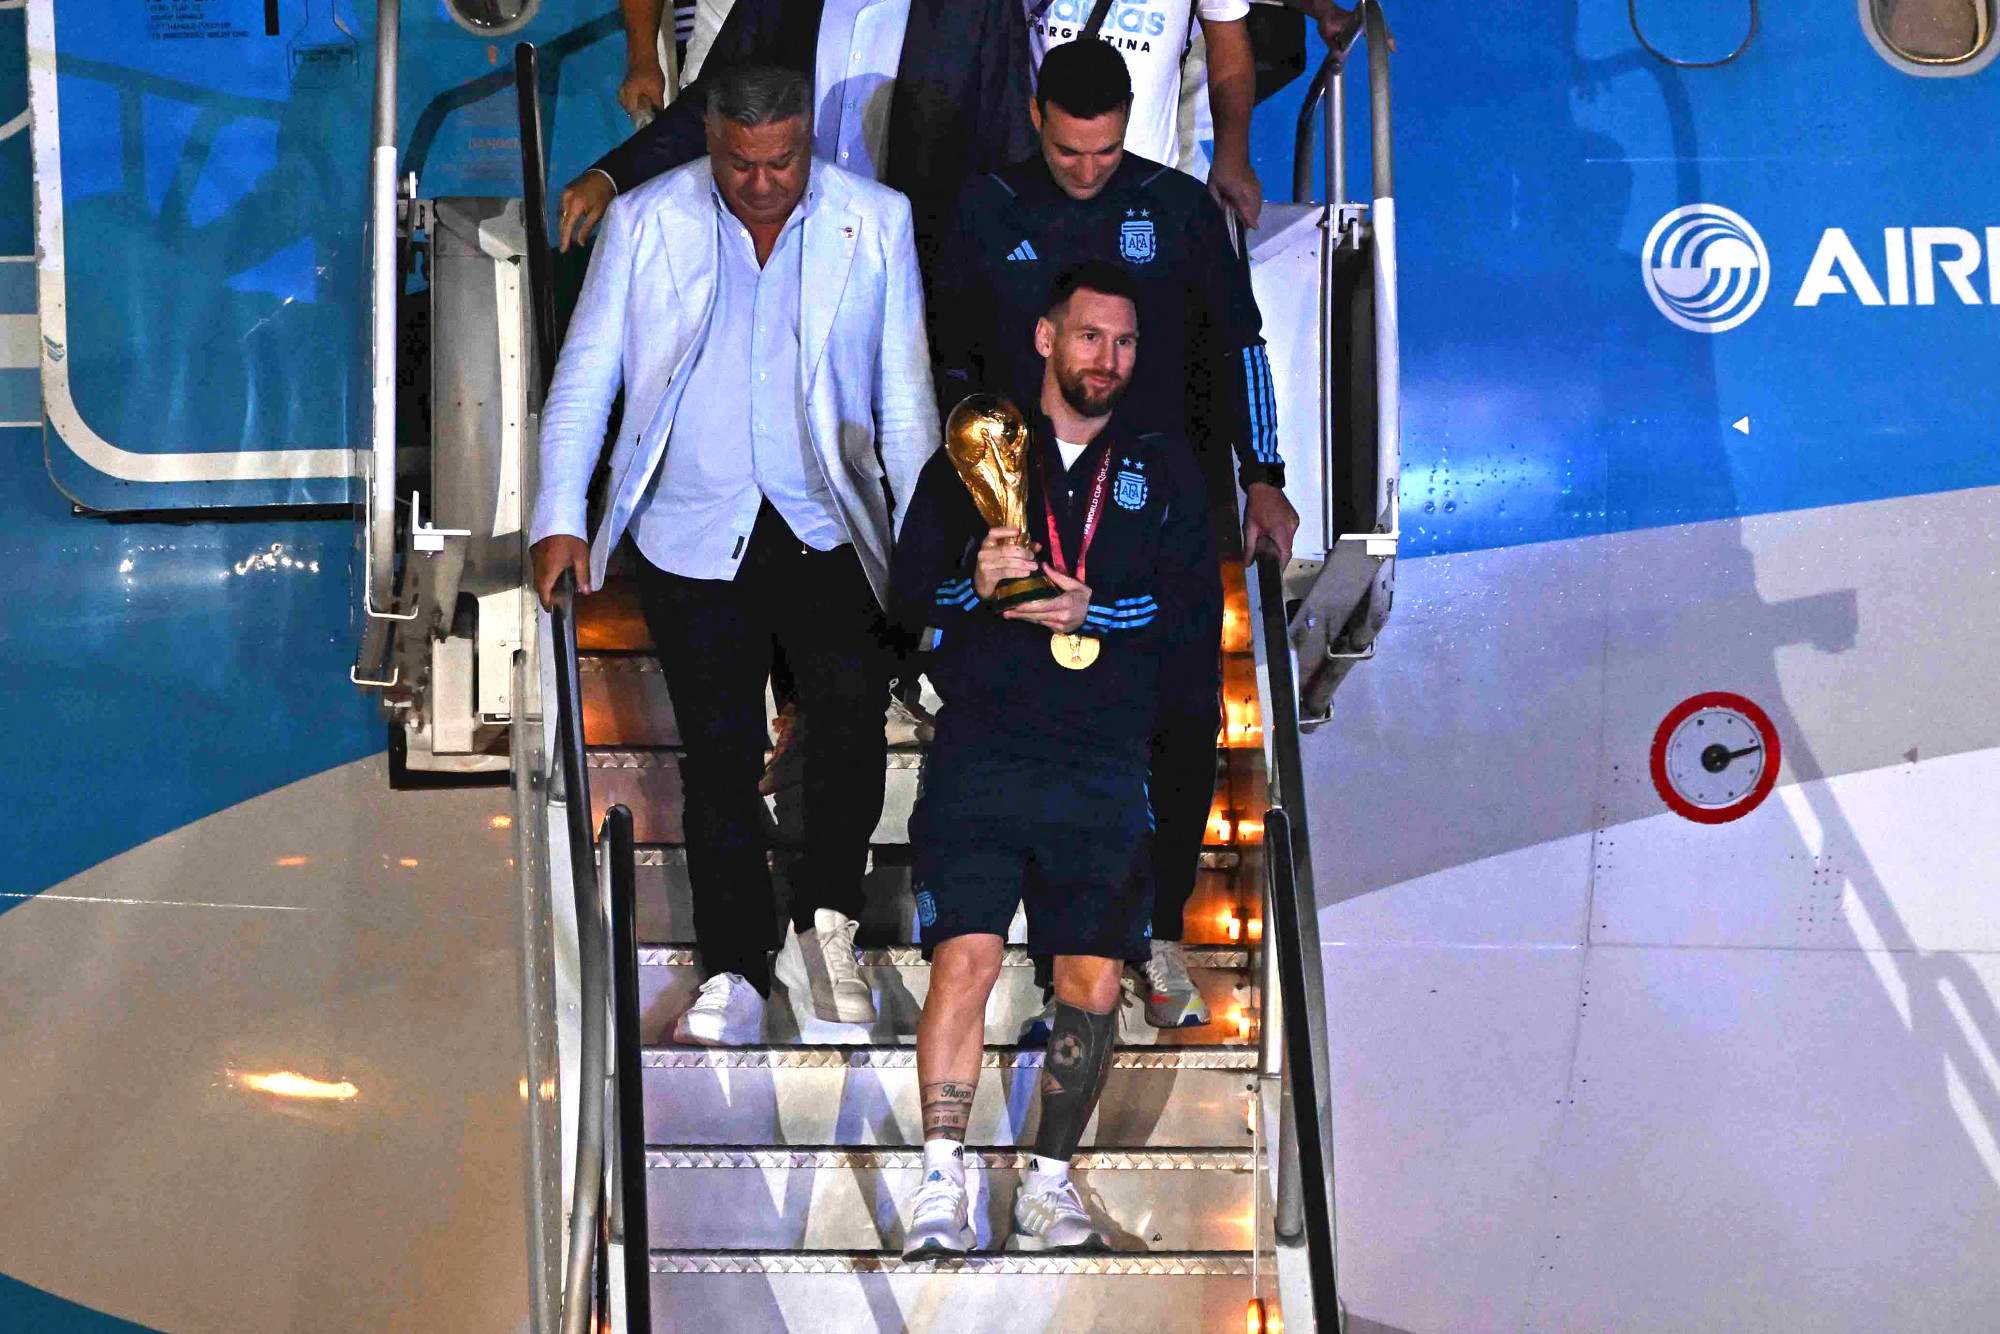 Hazaérkezett a világbajnok, Messi lépett először argentin földre